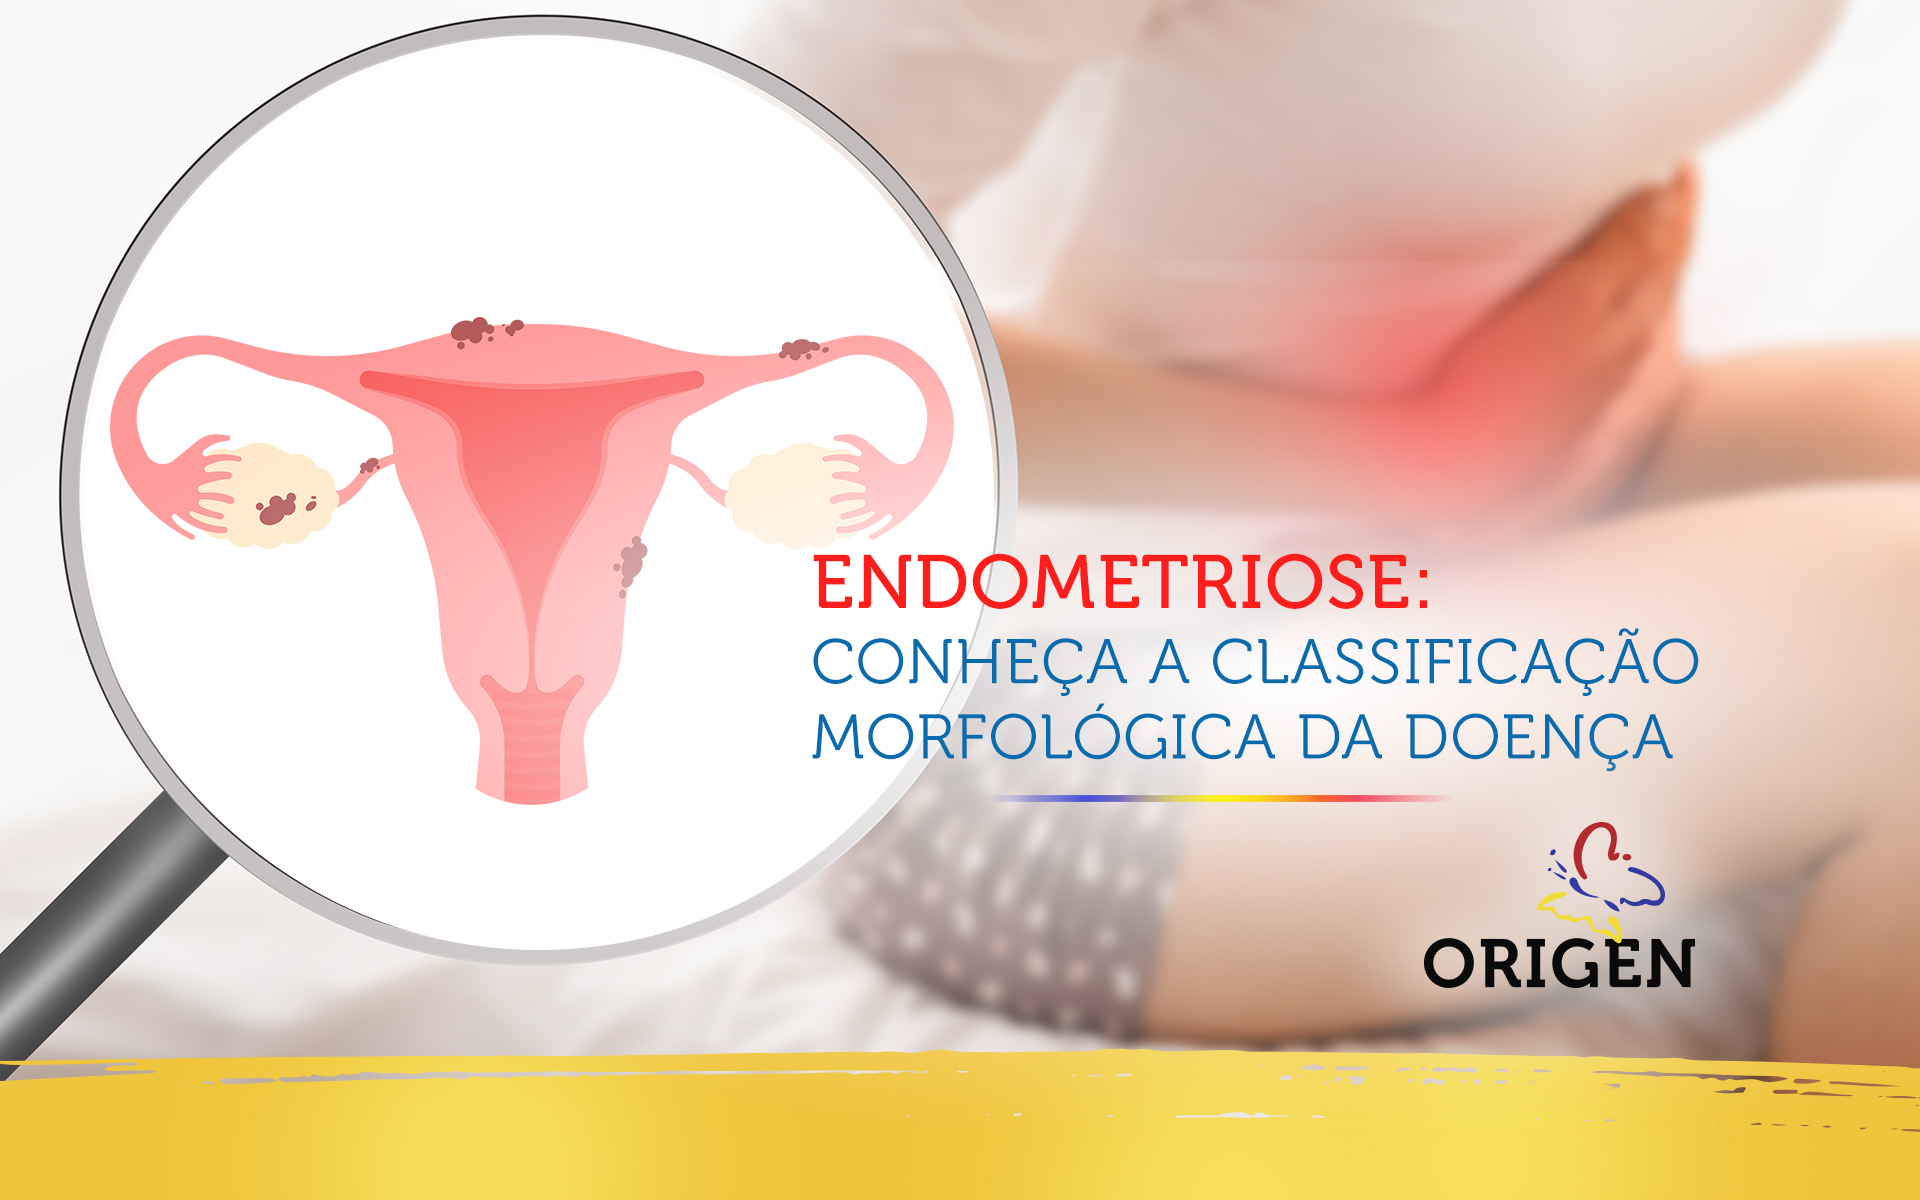 Endometriose: conheça a classificação morfológica da doença